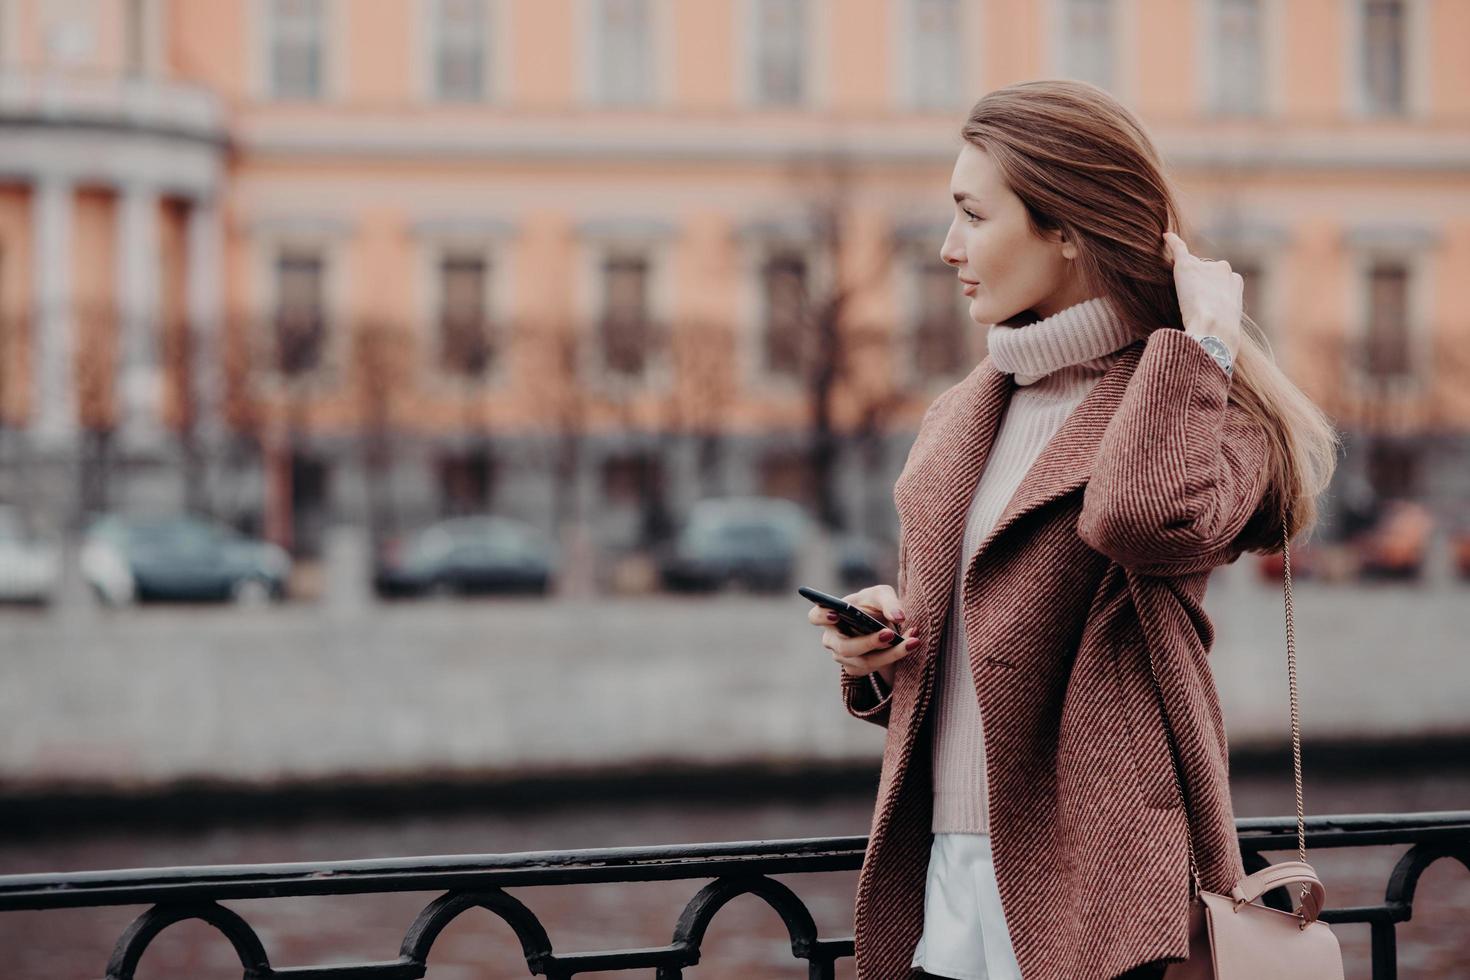 una foto al aire libre de una joven relajada mira a un lado con una expresión pensativa, sostiene un teléfono celular moderno, espera una llamada, se viste con suéter y abrigo blancos, lleva una bolsa, se para en un puente en la gran ciudad